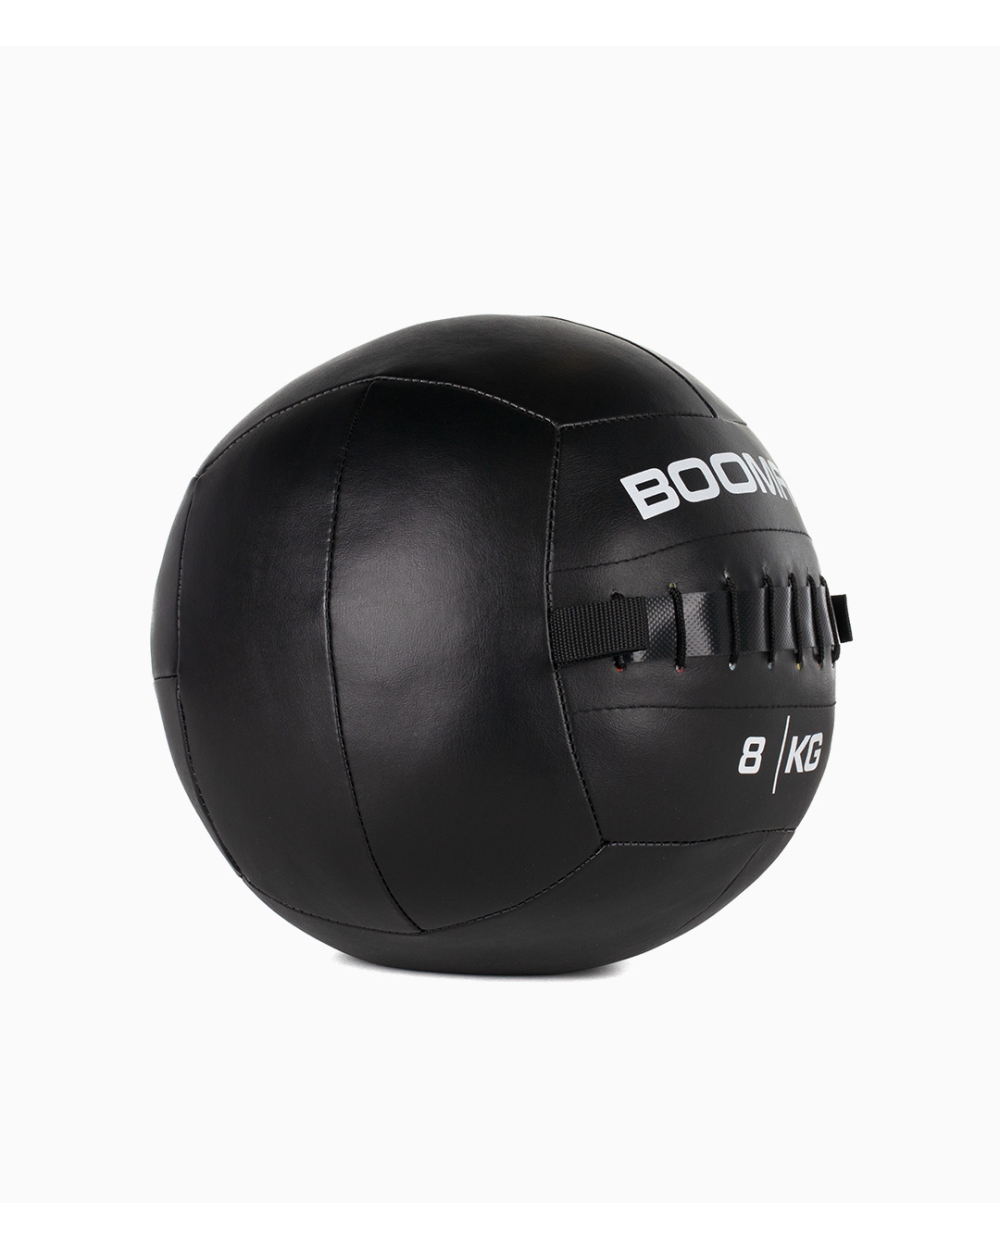 Balón Medicinal Boomfit 8kg - Wall Ball 8kg - Boomfit  MKP